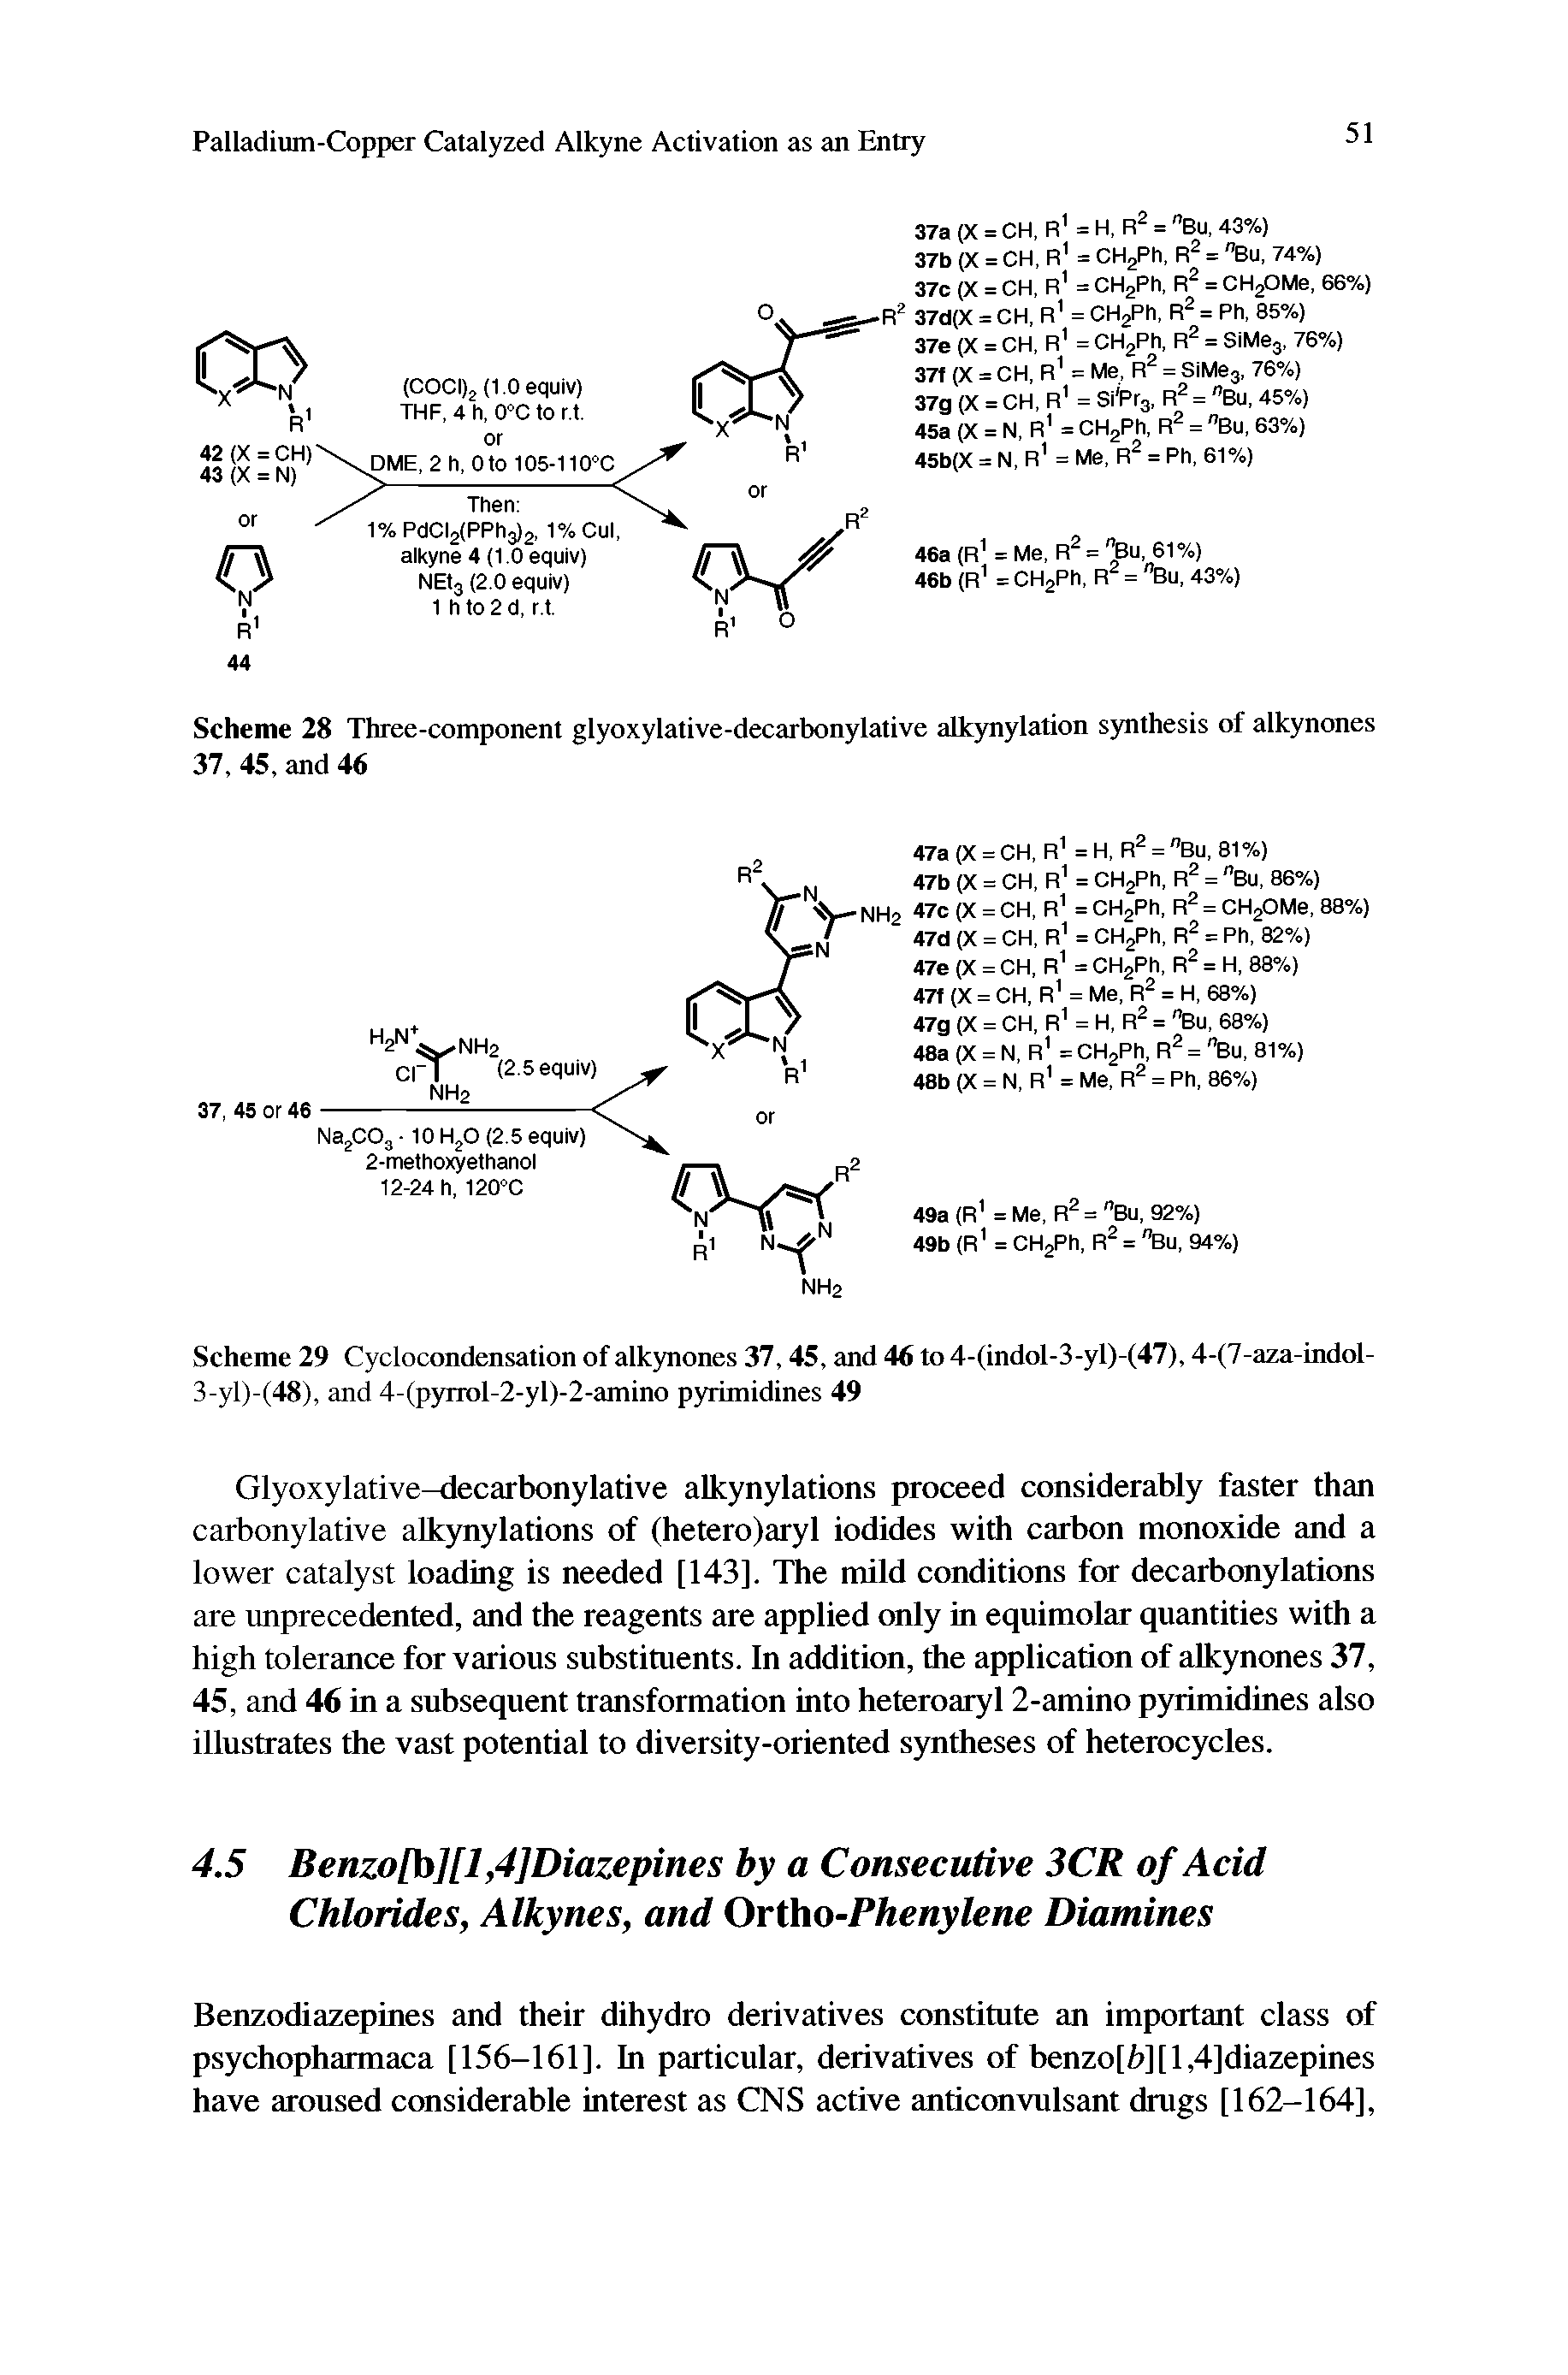 Scheme 29 Cyclocondensation of alkynones 37,45, and 46 to 4-(indol-3-yl)-(47), 4-(7-aza-indol-3-yl)-(48), and 4-(pyrrol-2-yl)-2-amino pyrimidines 49...